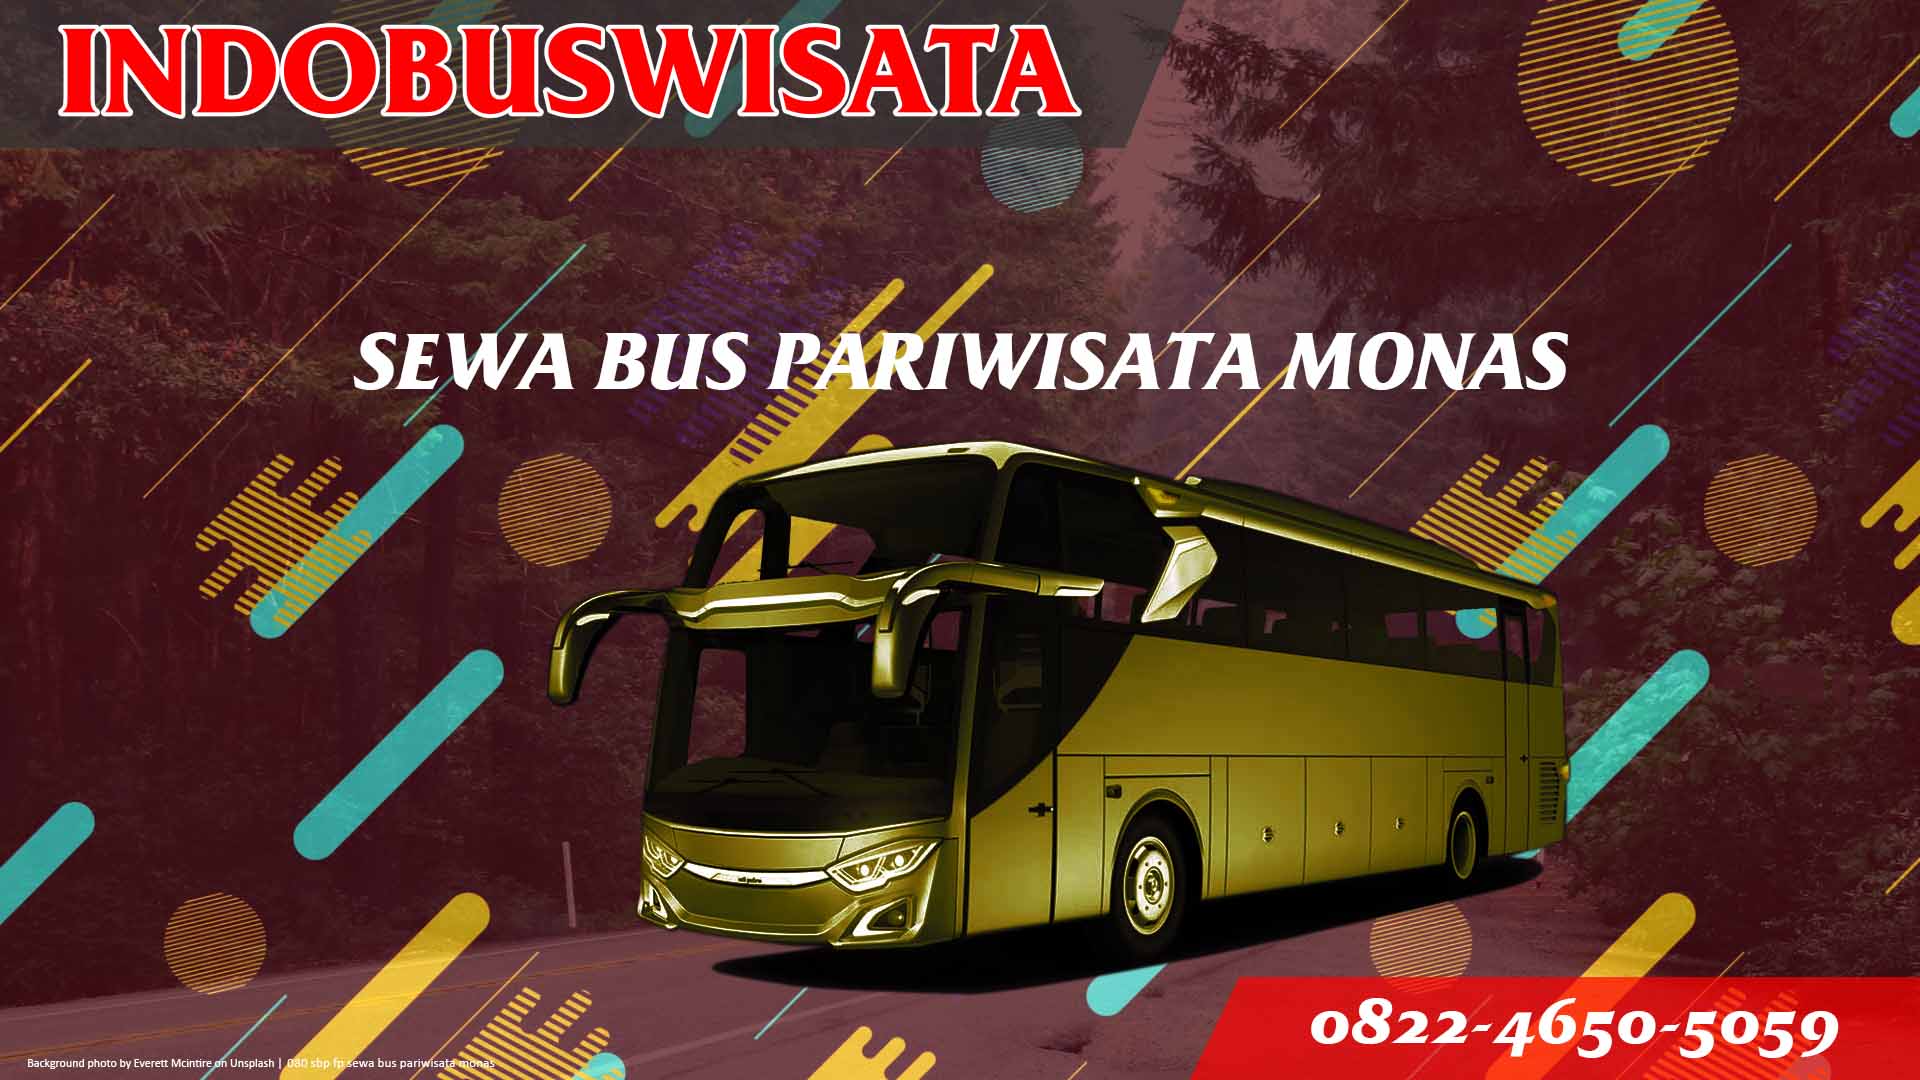 080 Sbp Fp Sewa Bus Pariwisata Monas Indobuswisata